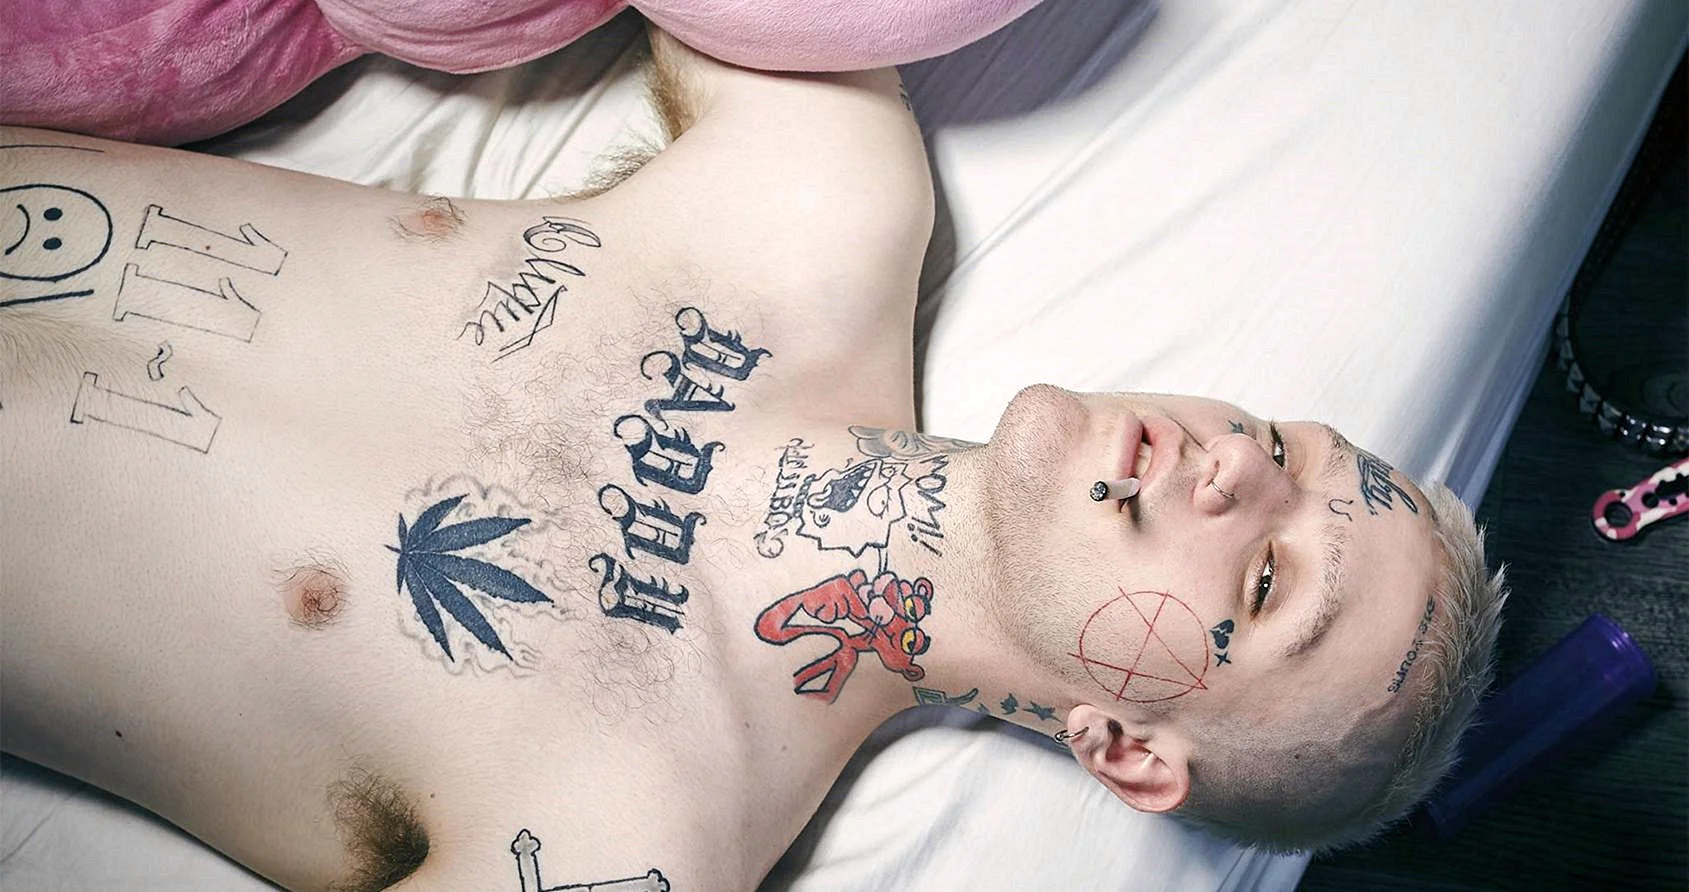 Lil Peep Exit Life Tattoo Wallpaper